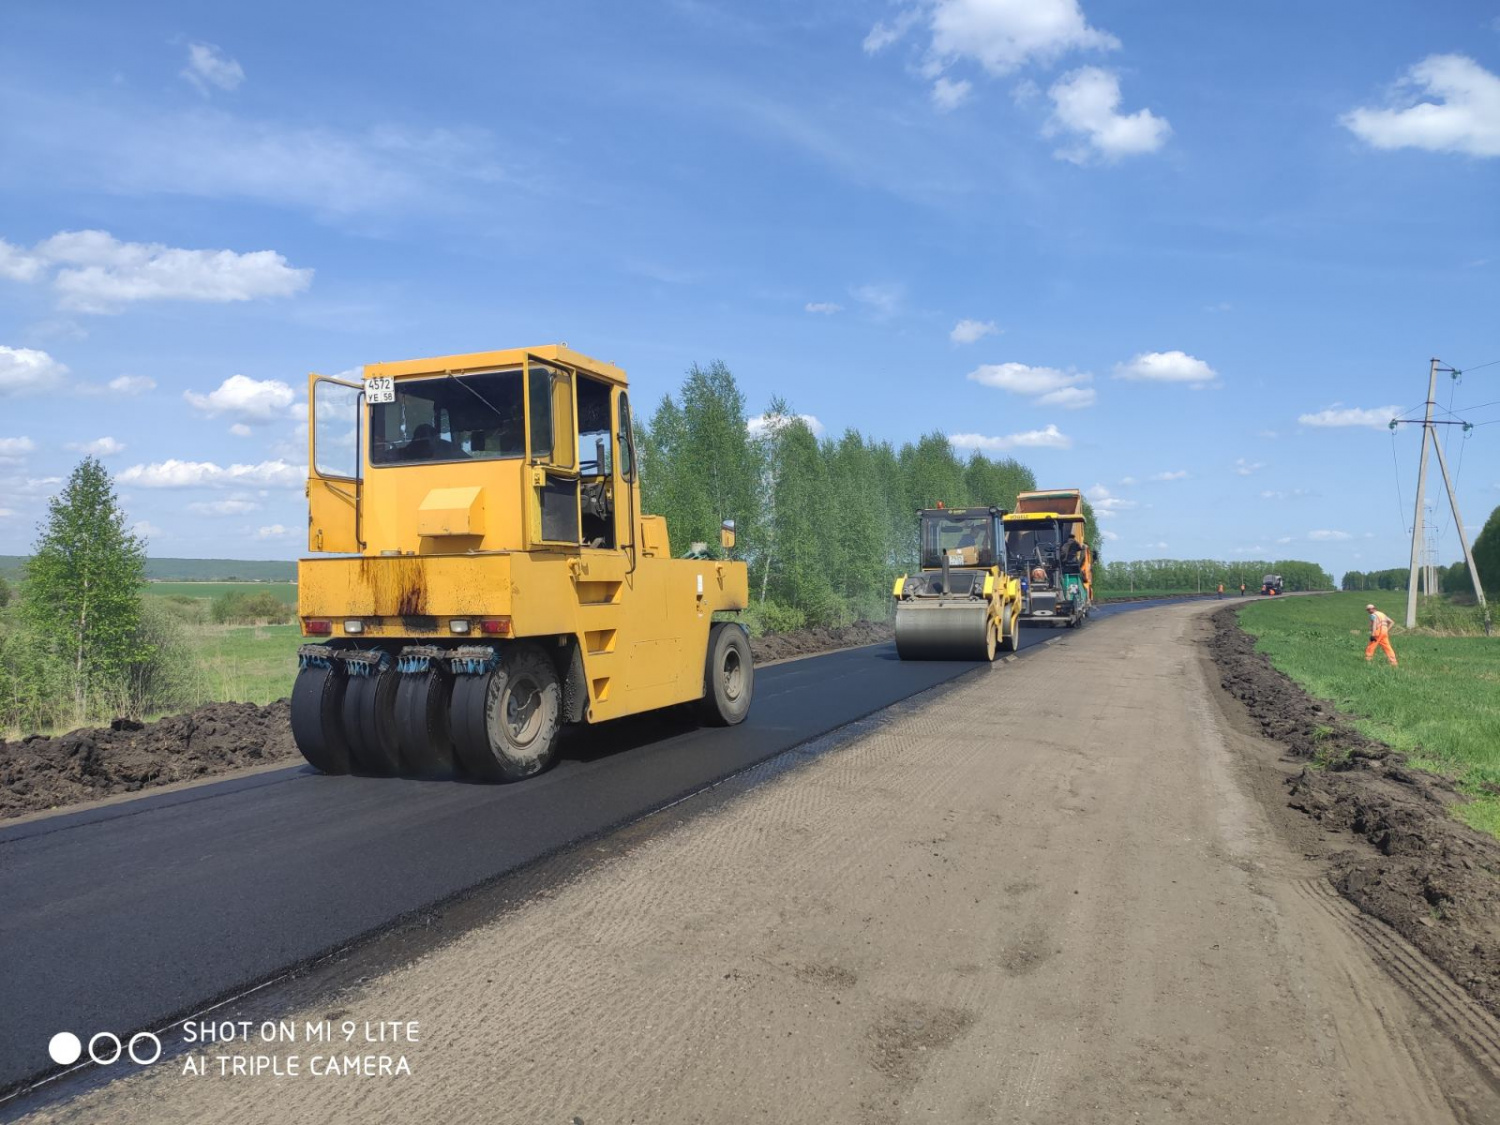 За 33 миллиона рублей отремонтировали дорогу в Сосновоборском районе по БКД 